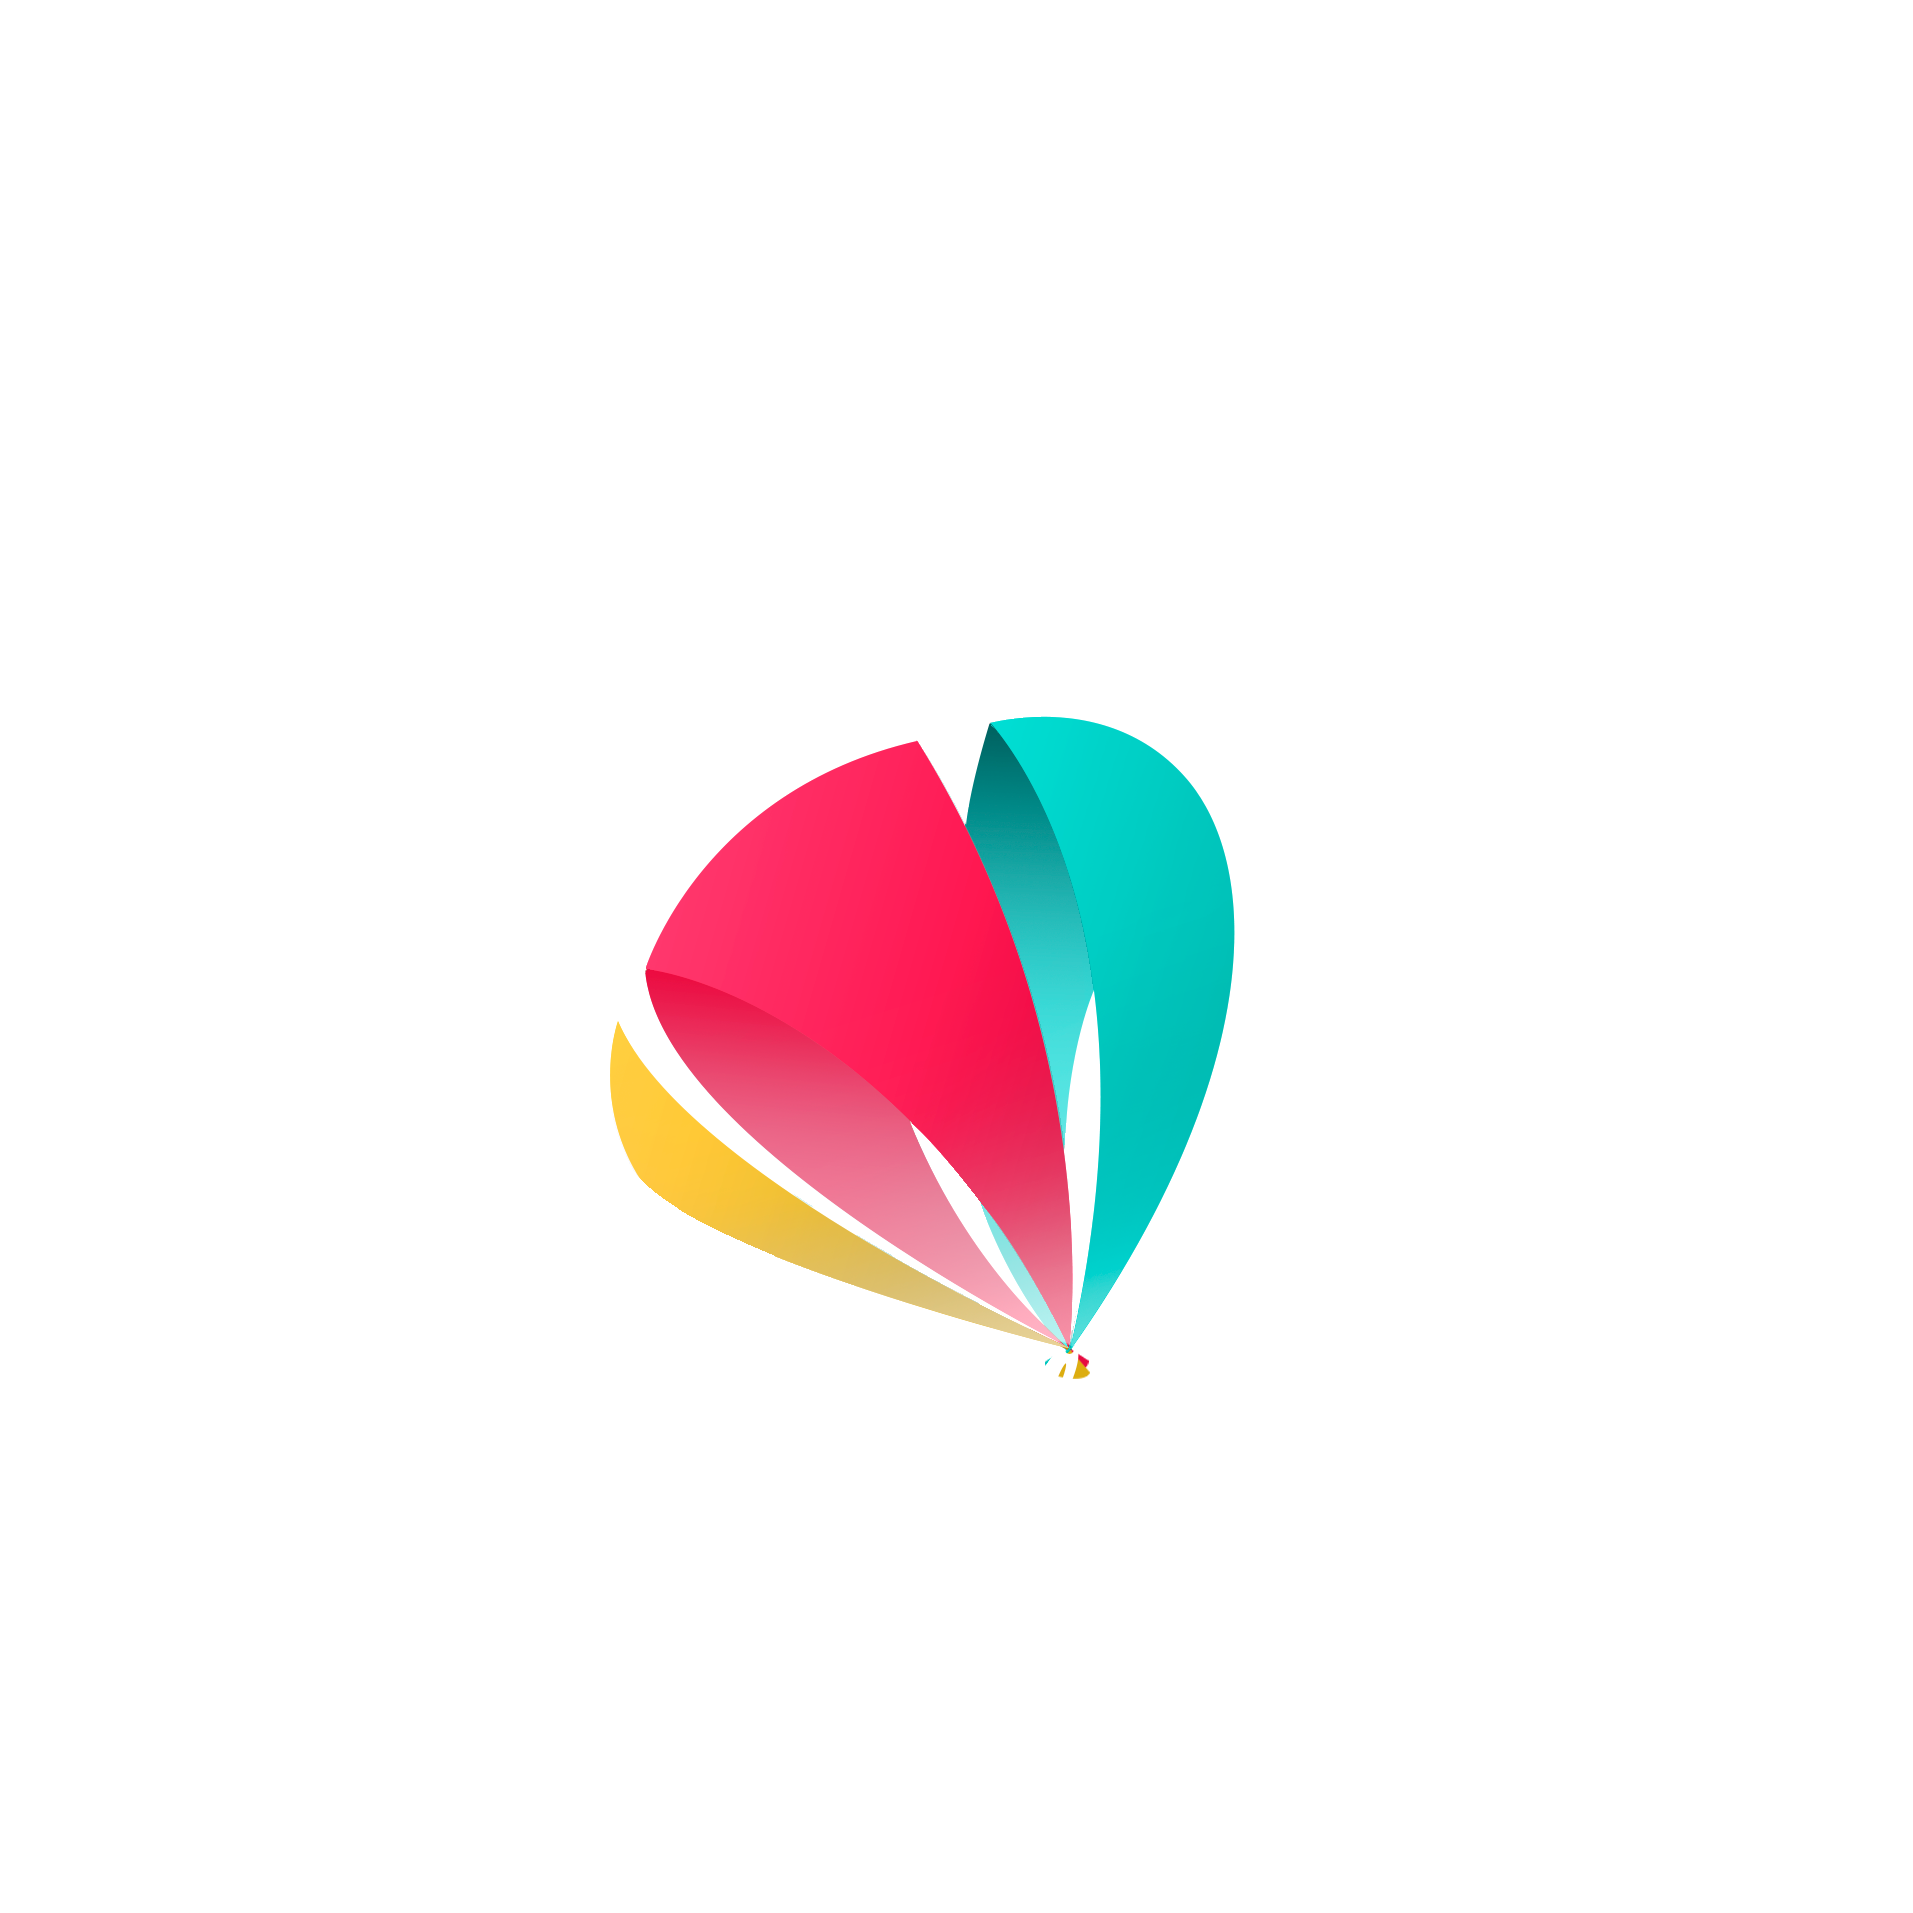 Globo de Mil Colores